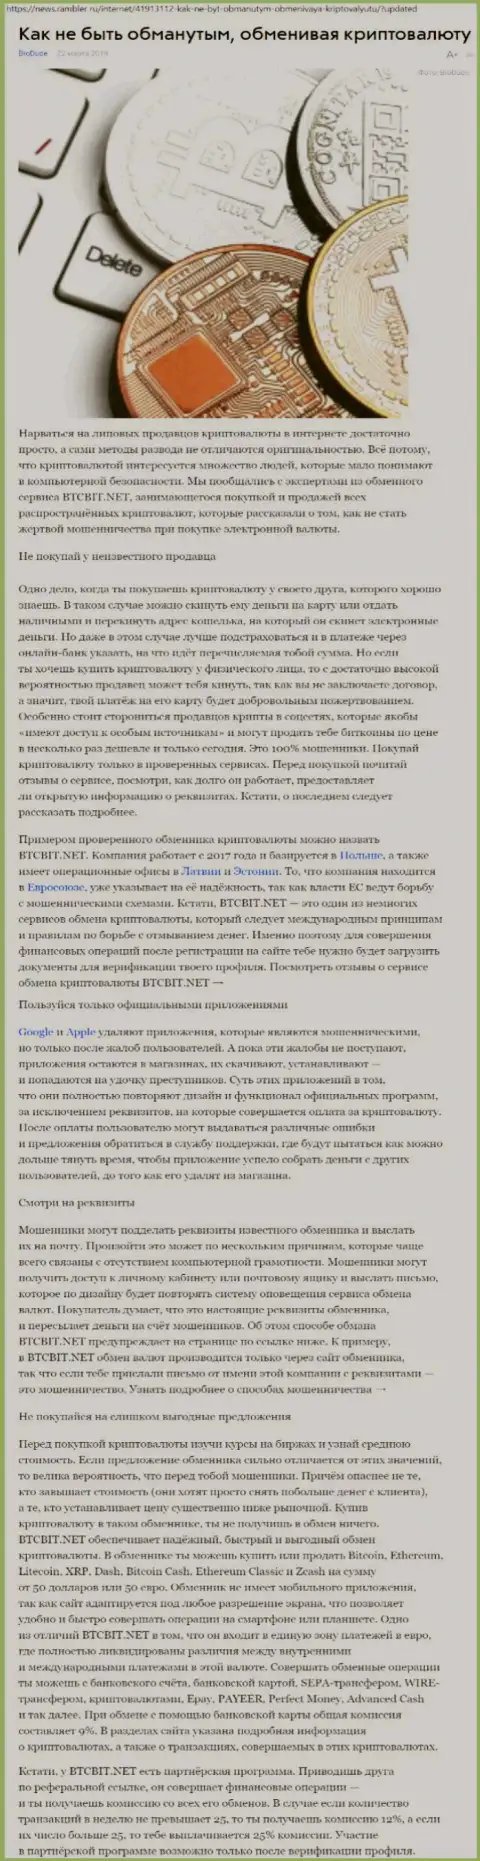 Публикация об онлайн обменнике БТЦБИТ Сп. з.о.о. на News Rambler Ru